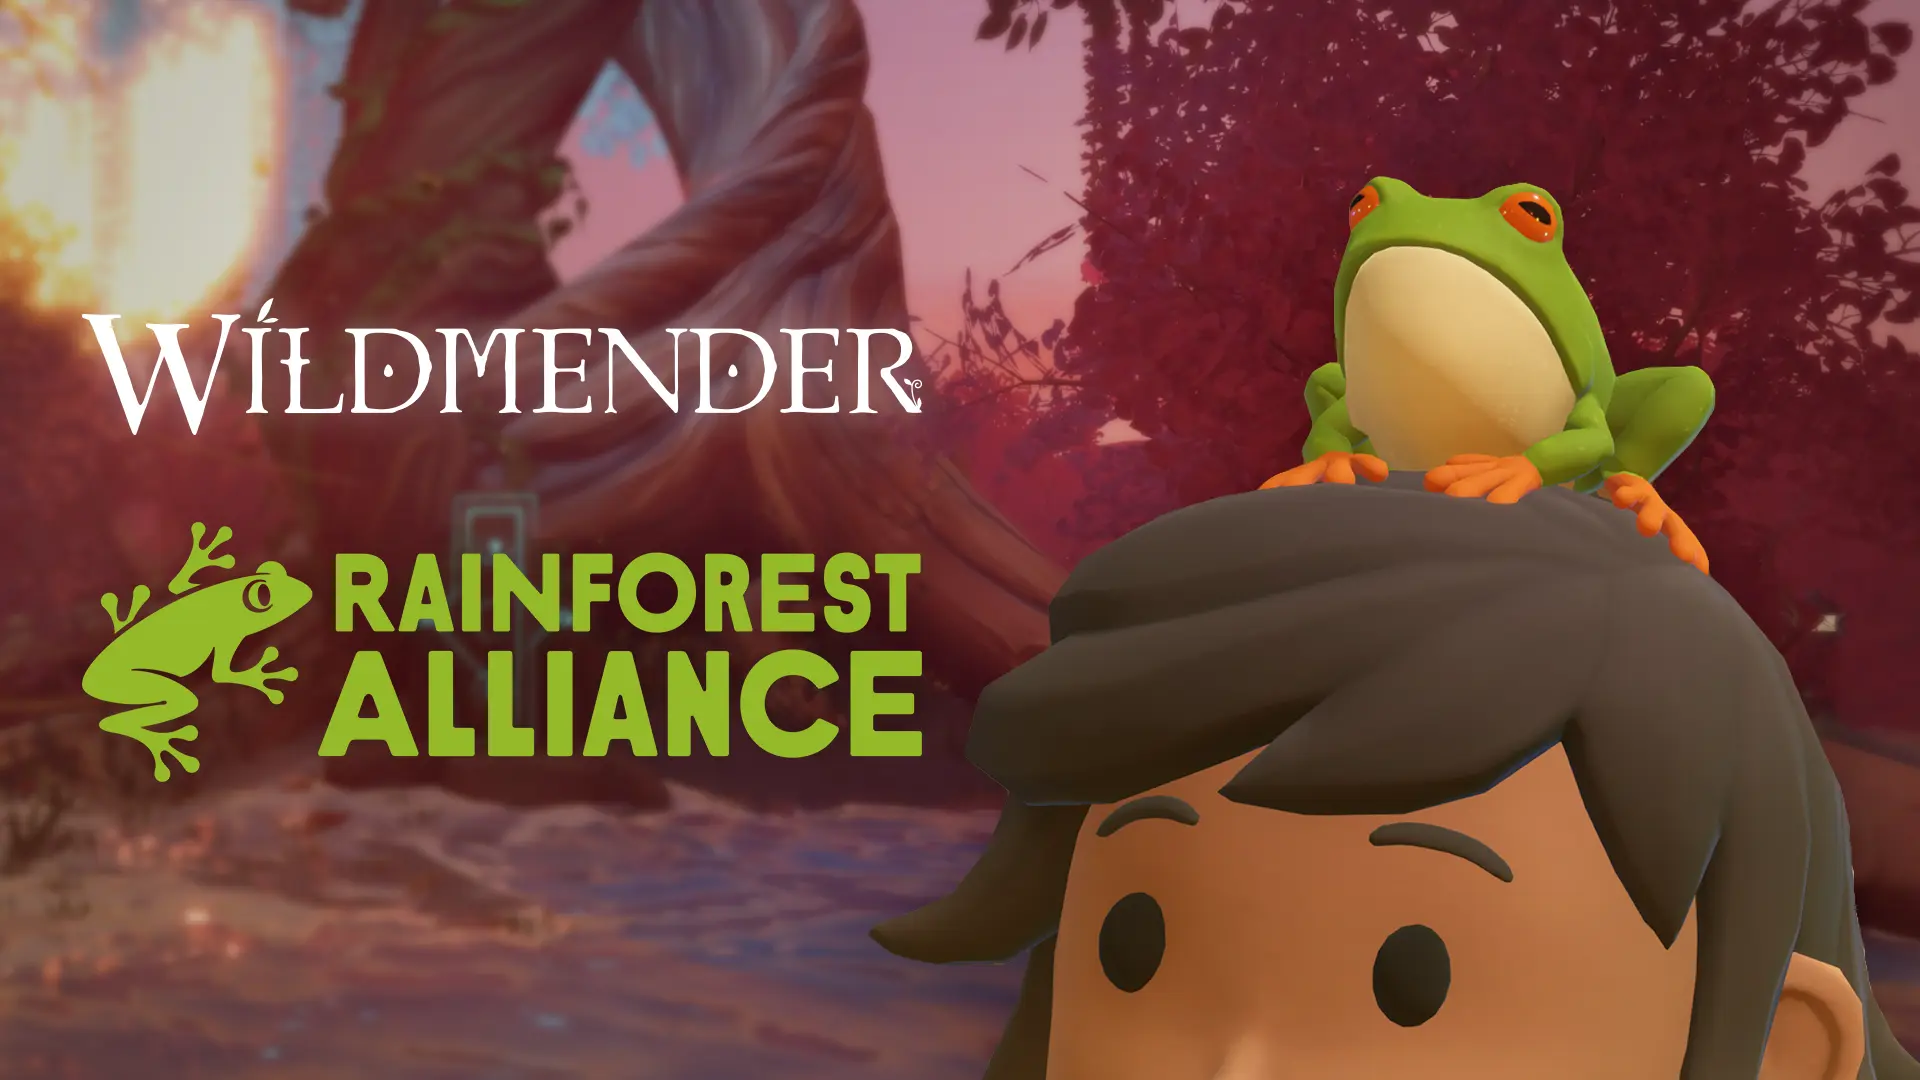 Wildmender x Rainforest Alliance